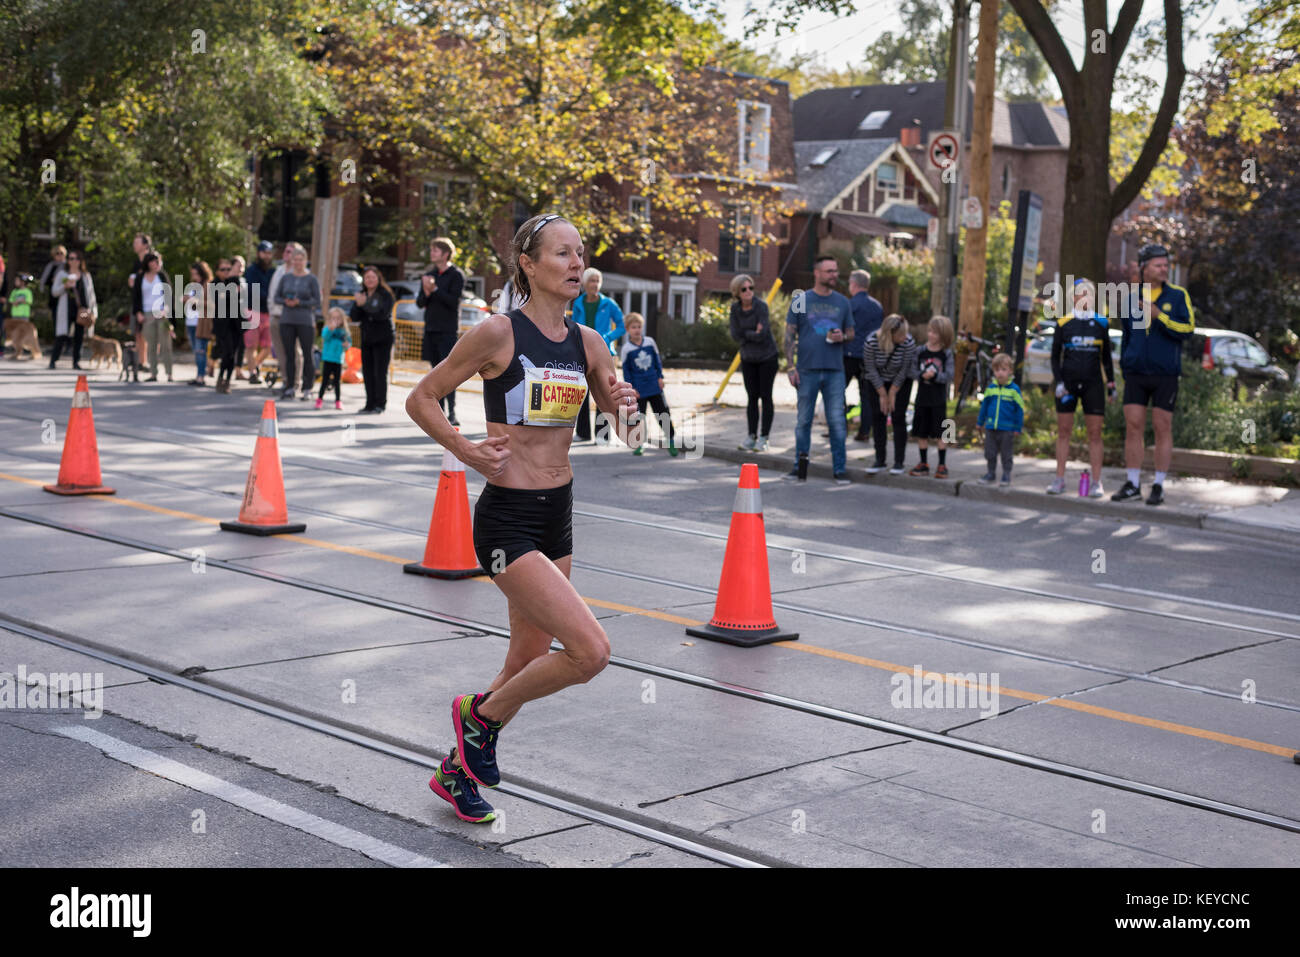 Toronto, Ontario/Canada - oct 22, 2017 : coureur de marathon catherine passant le 33km point de retour au 2017 Scotiabank Toronto Waterfront Marathon. Banque D'Images